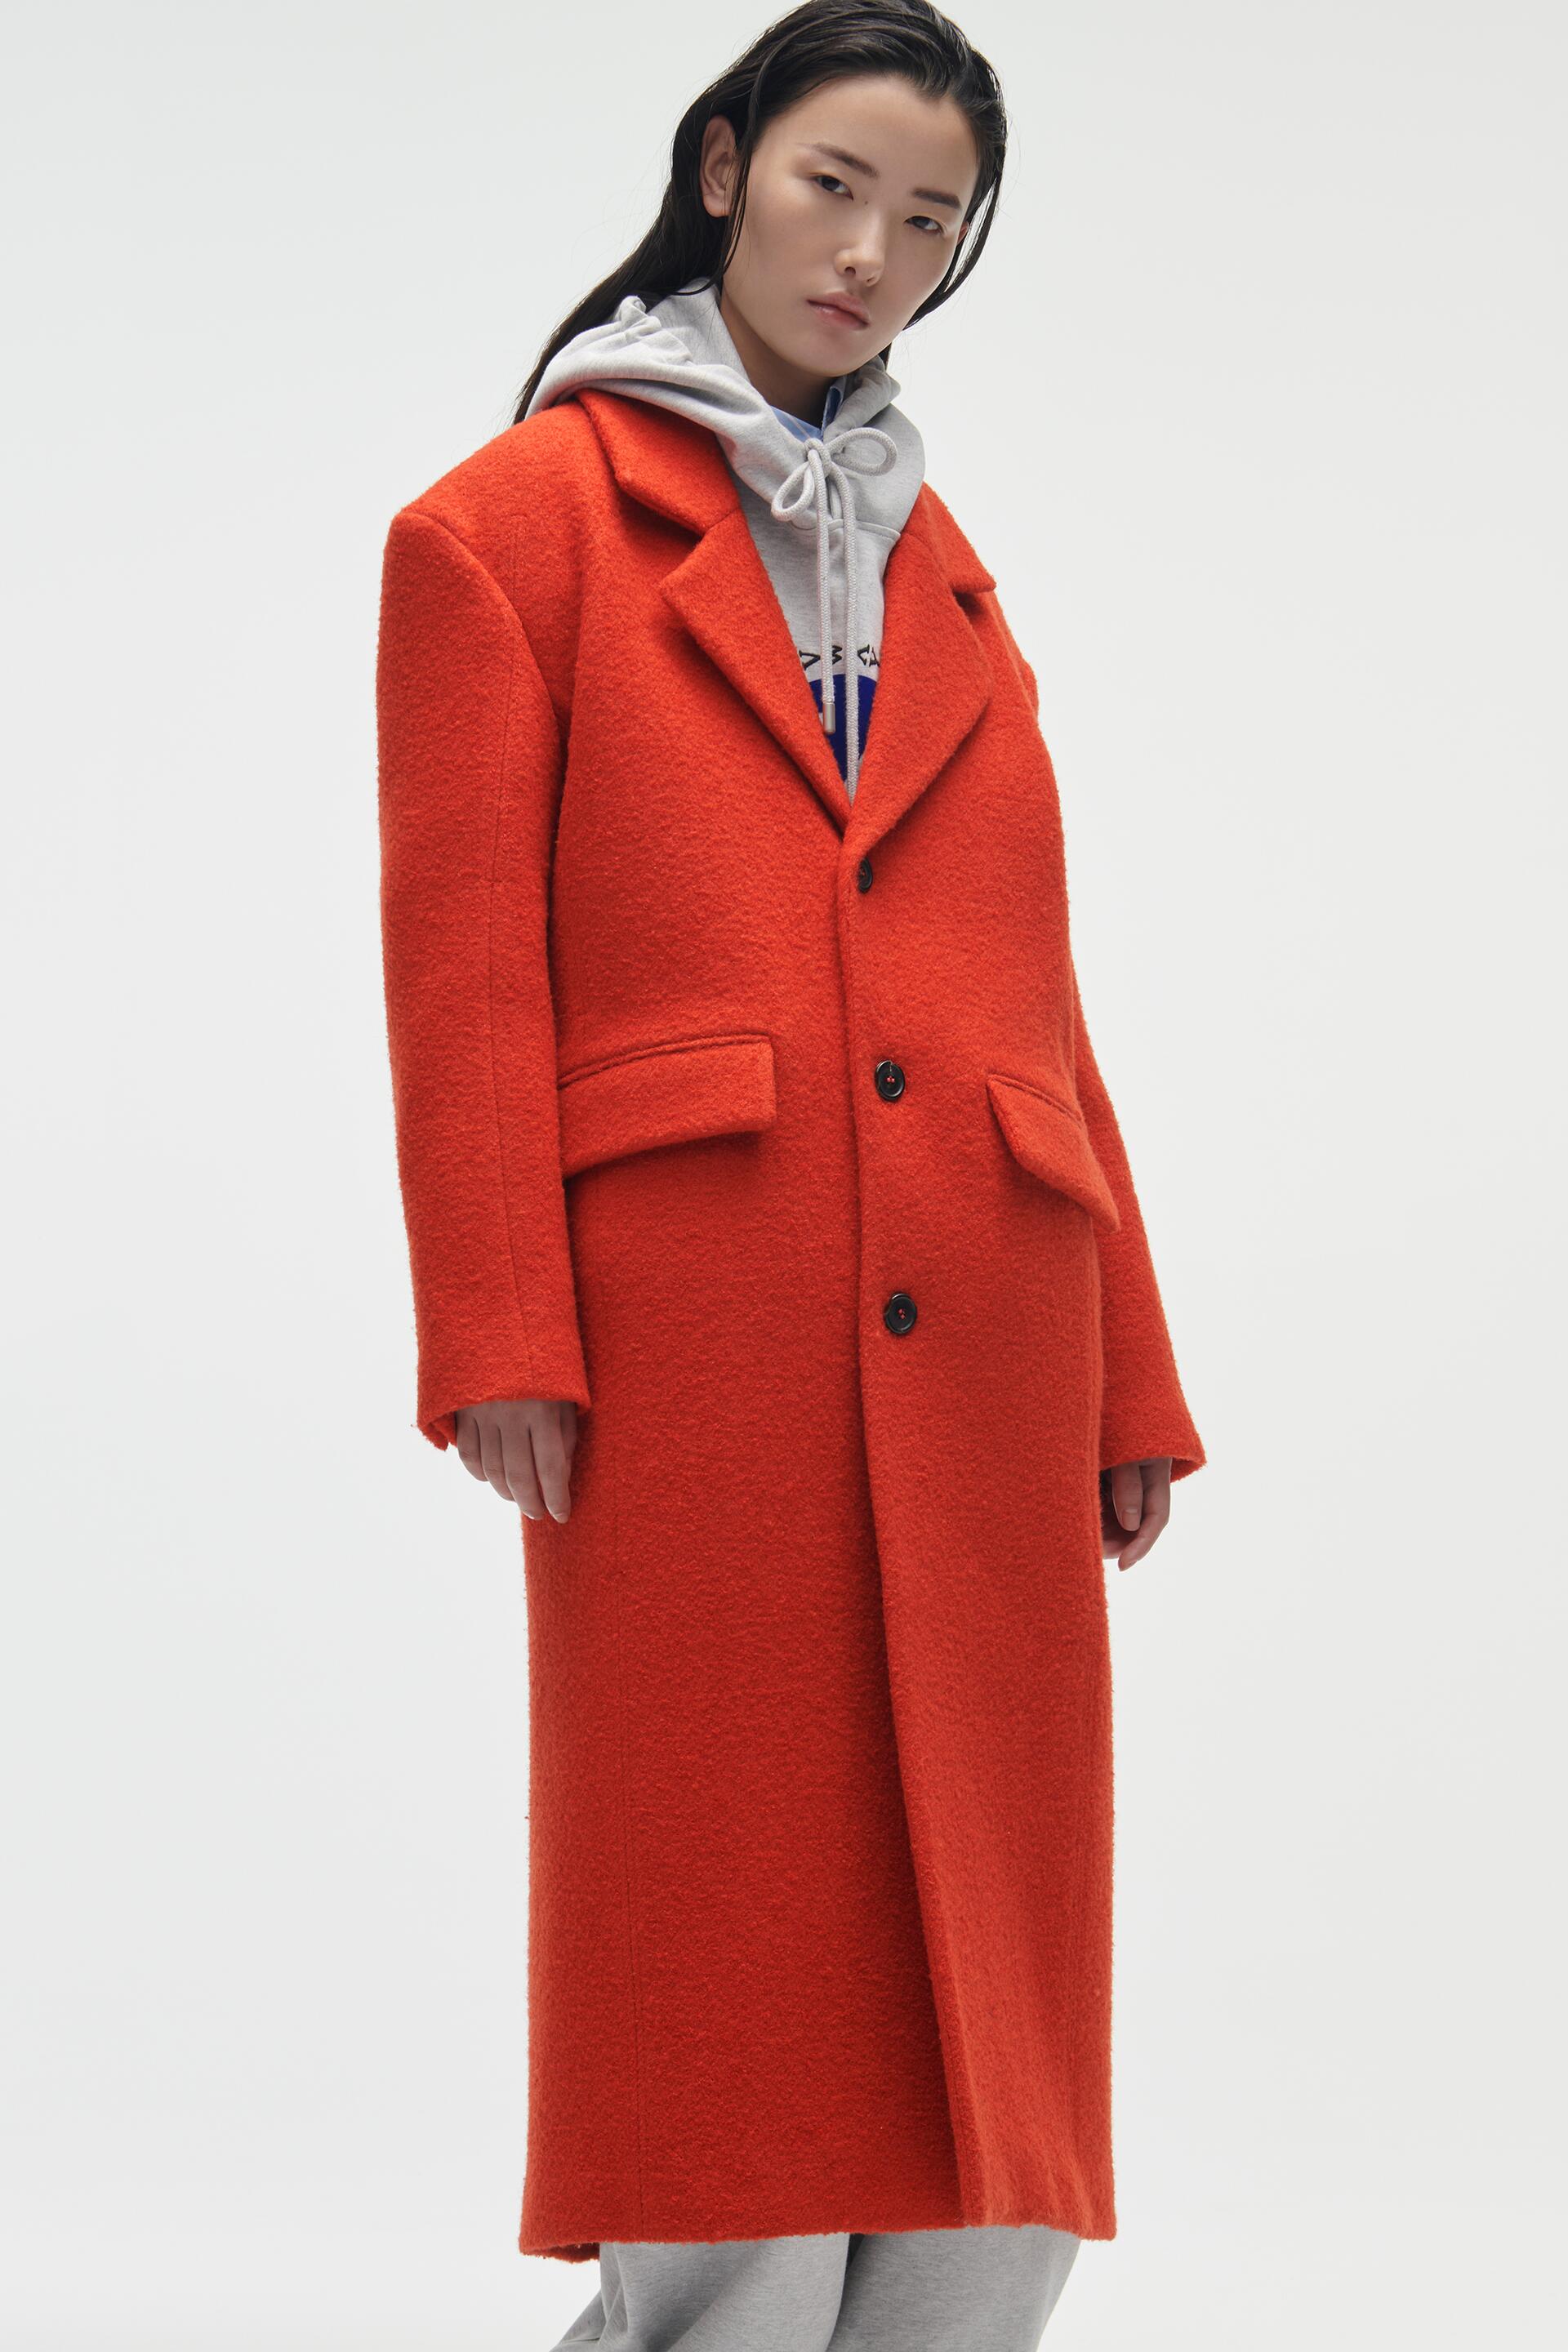 Пальто женское ZARA 02010840 оранжевое S (доставка из-за рубежа)